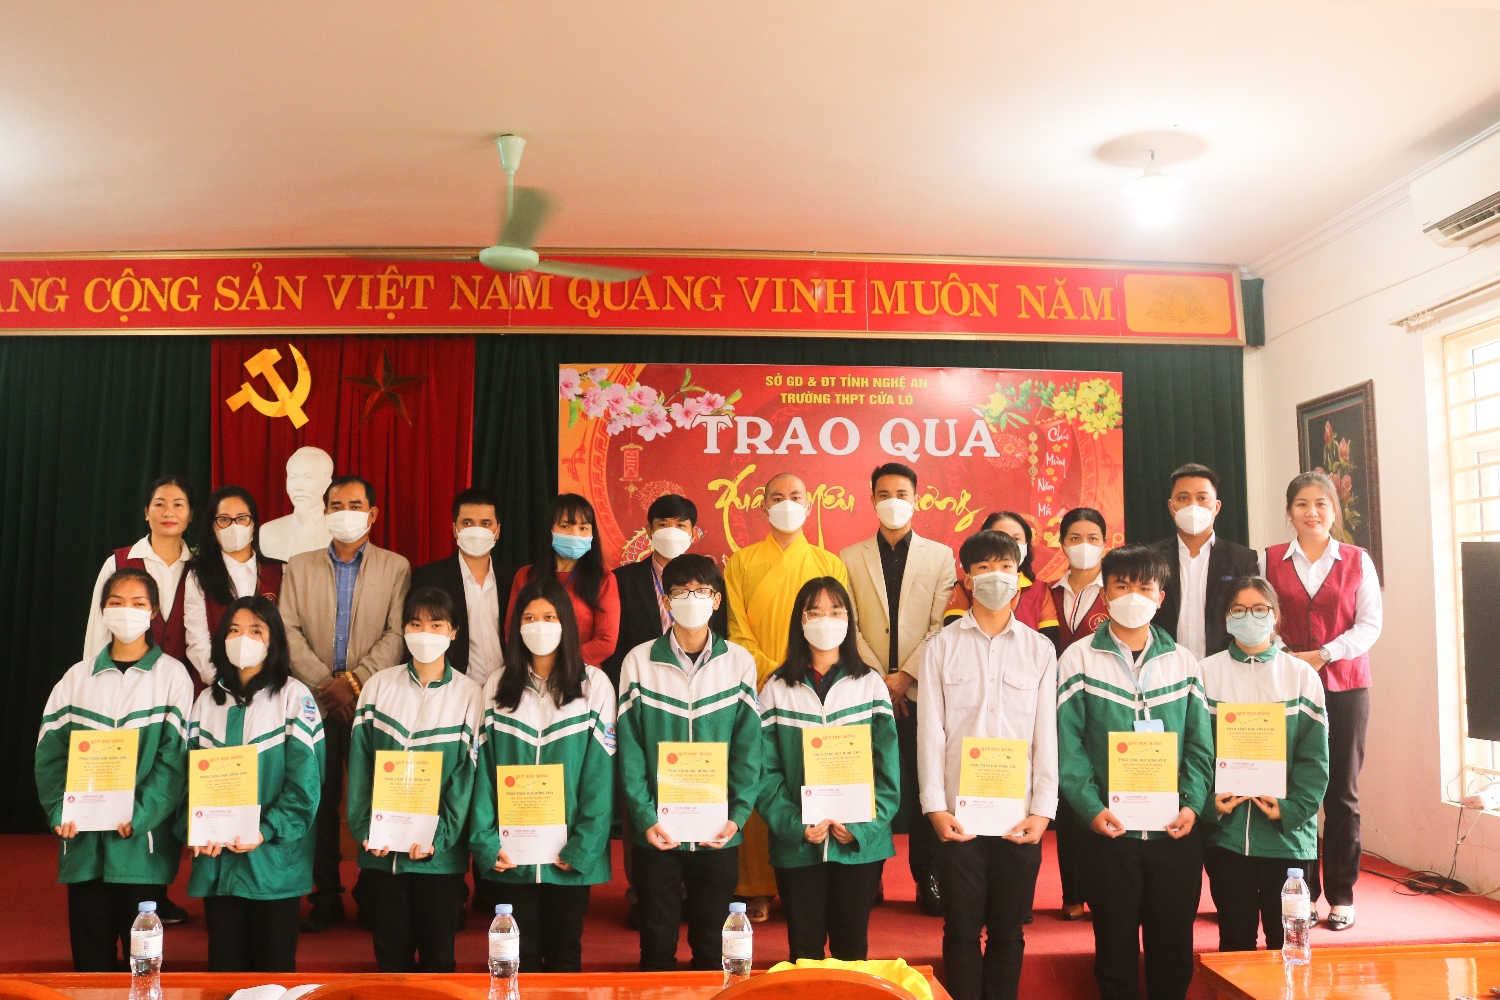 Ban giám hiệu nhà trường cùng Đại đức Thích Tâm Thành và thành viên hội từ thiện Tâm Bồ Đề trao quà cho các em học sinh.